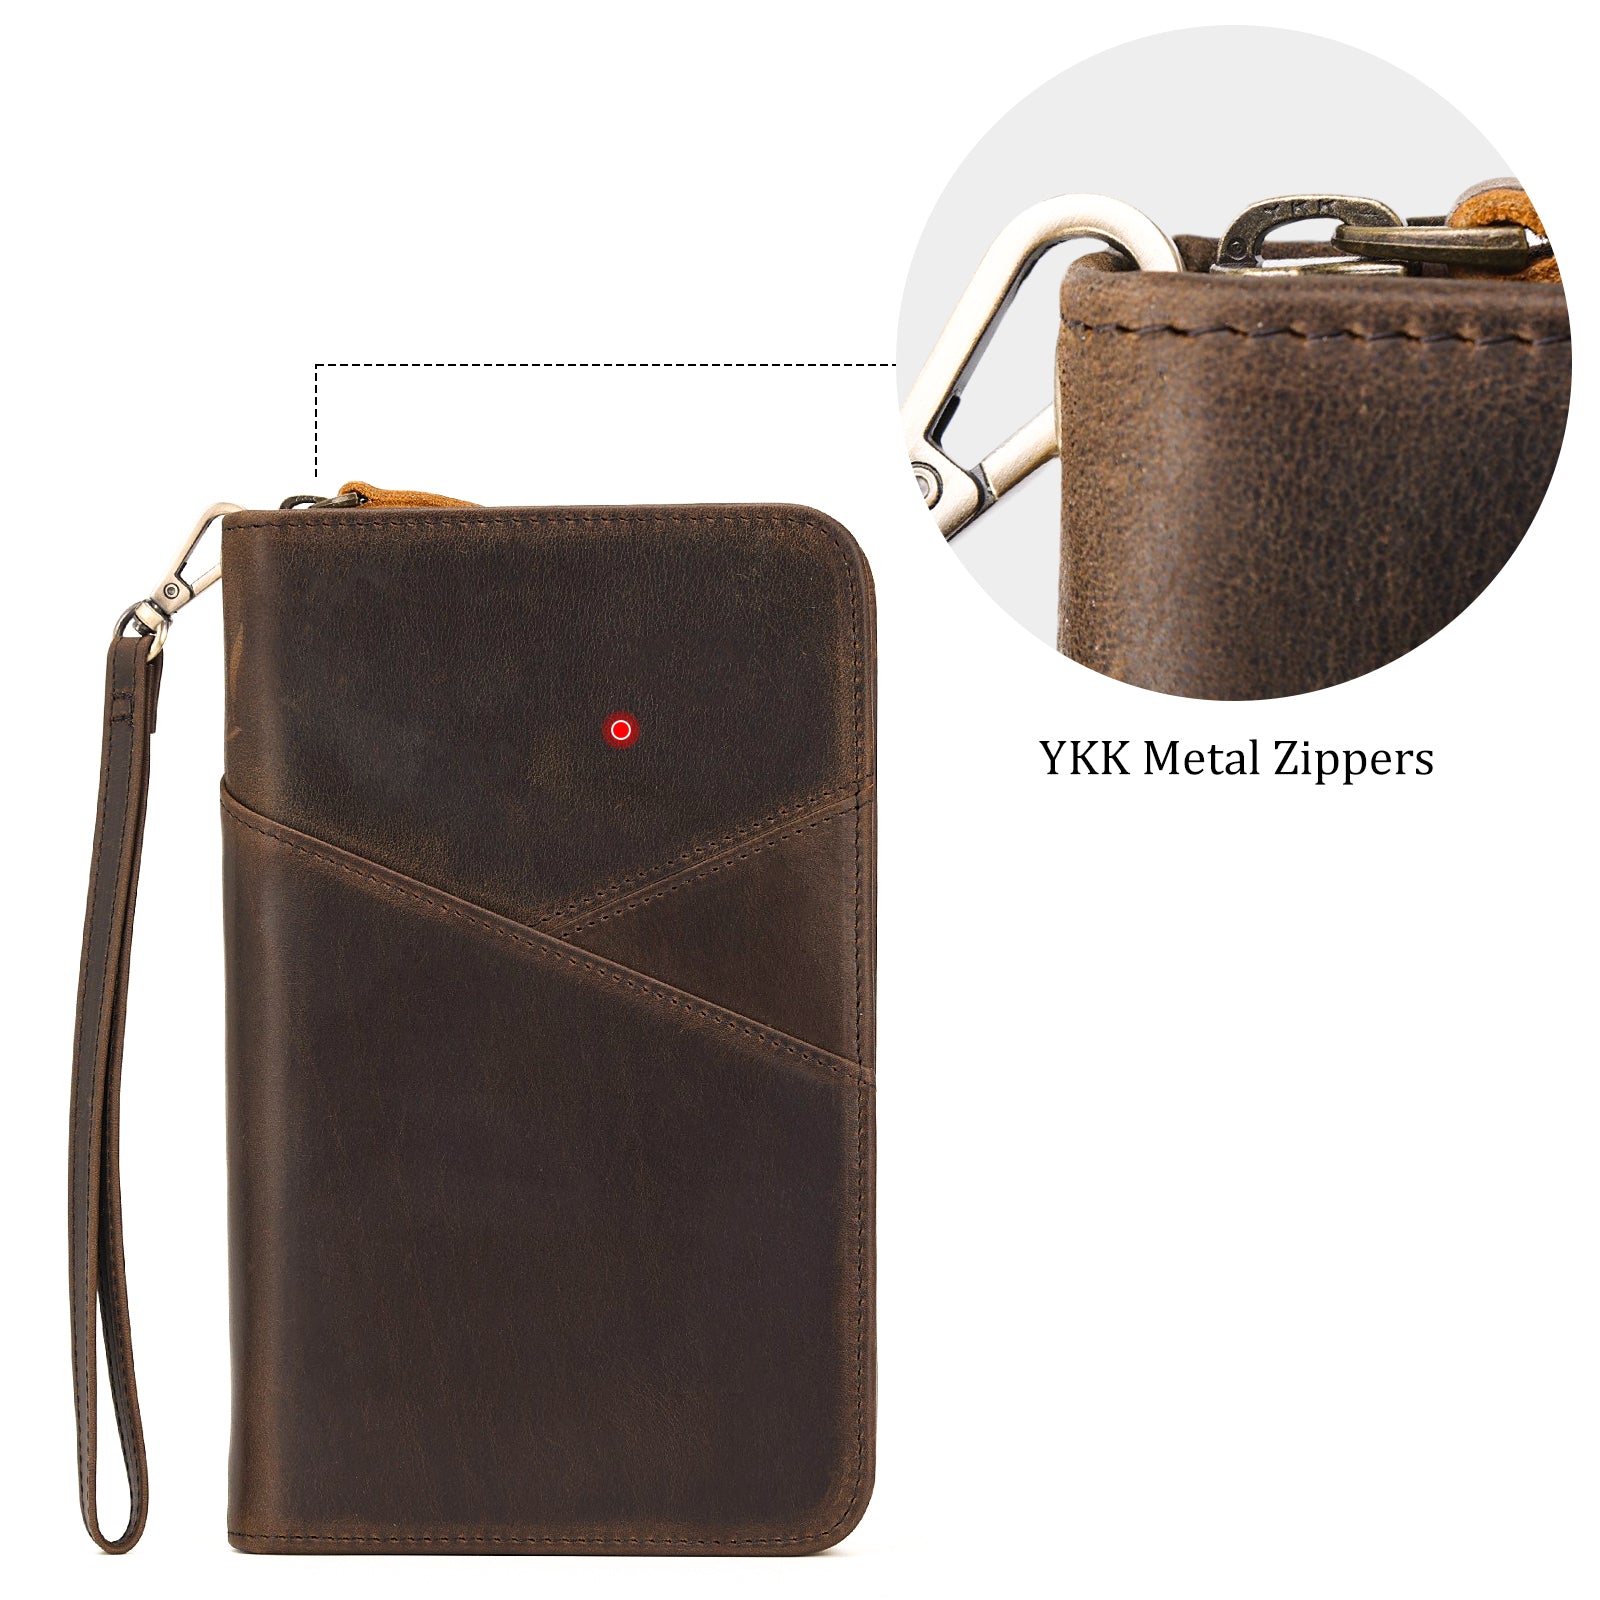 Full Grain Leather Passport Ticket Holder Case Holds 2 Passports (Dark Brown,YKK Zippers)